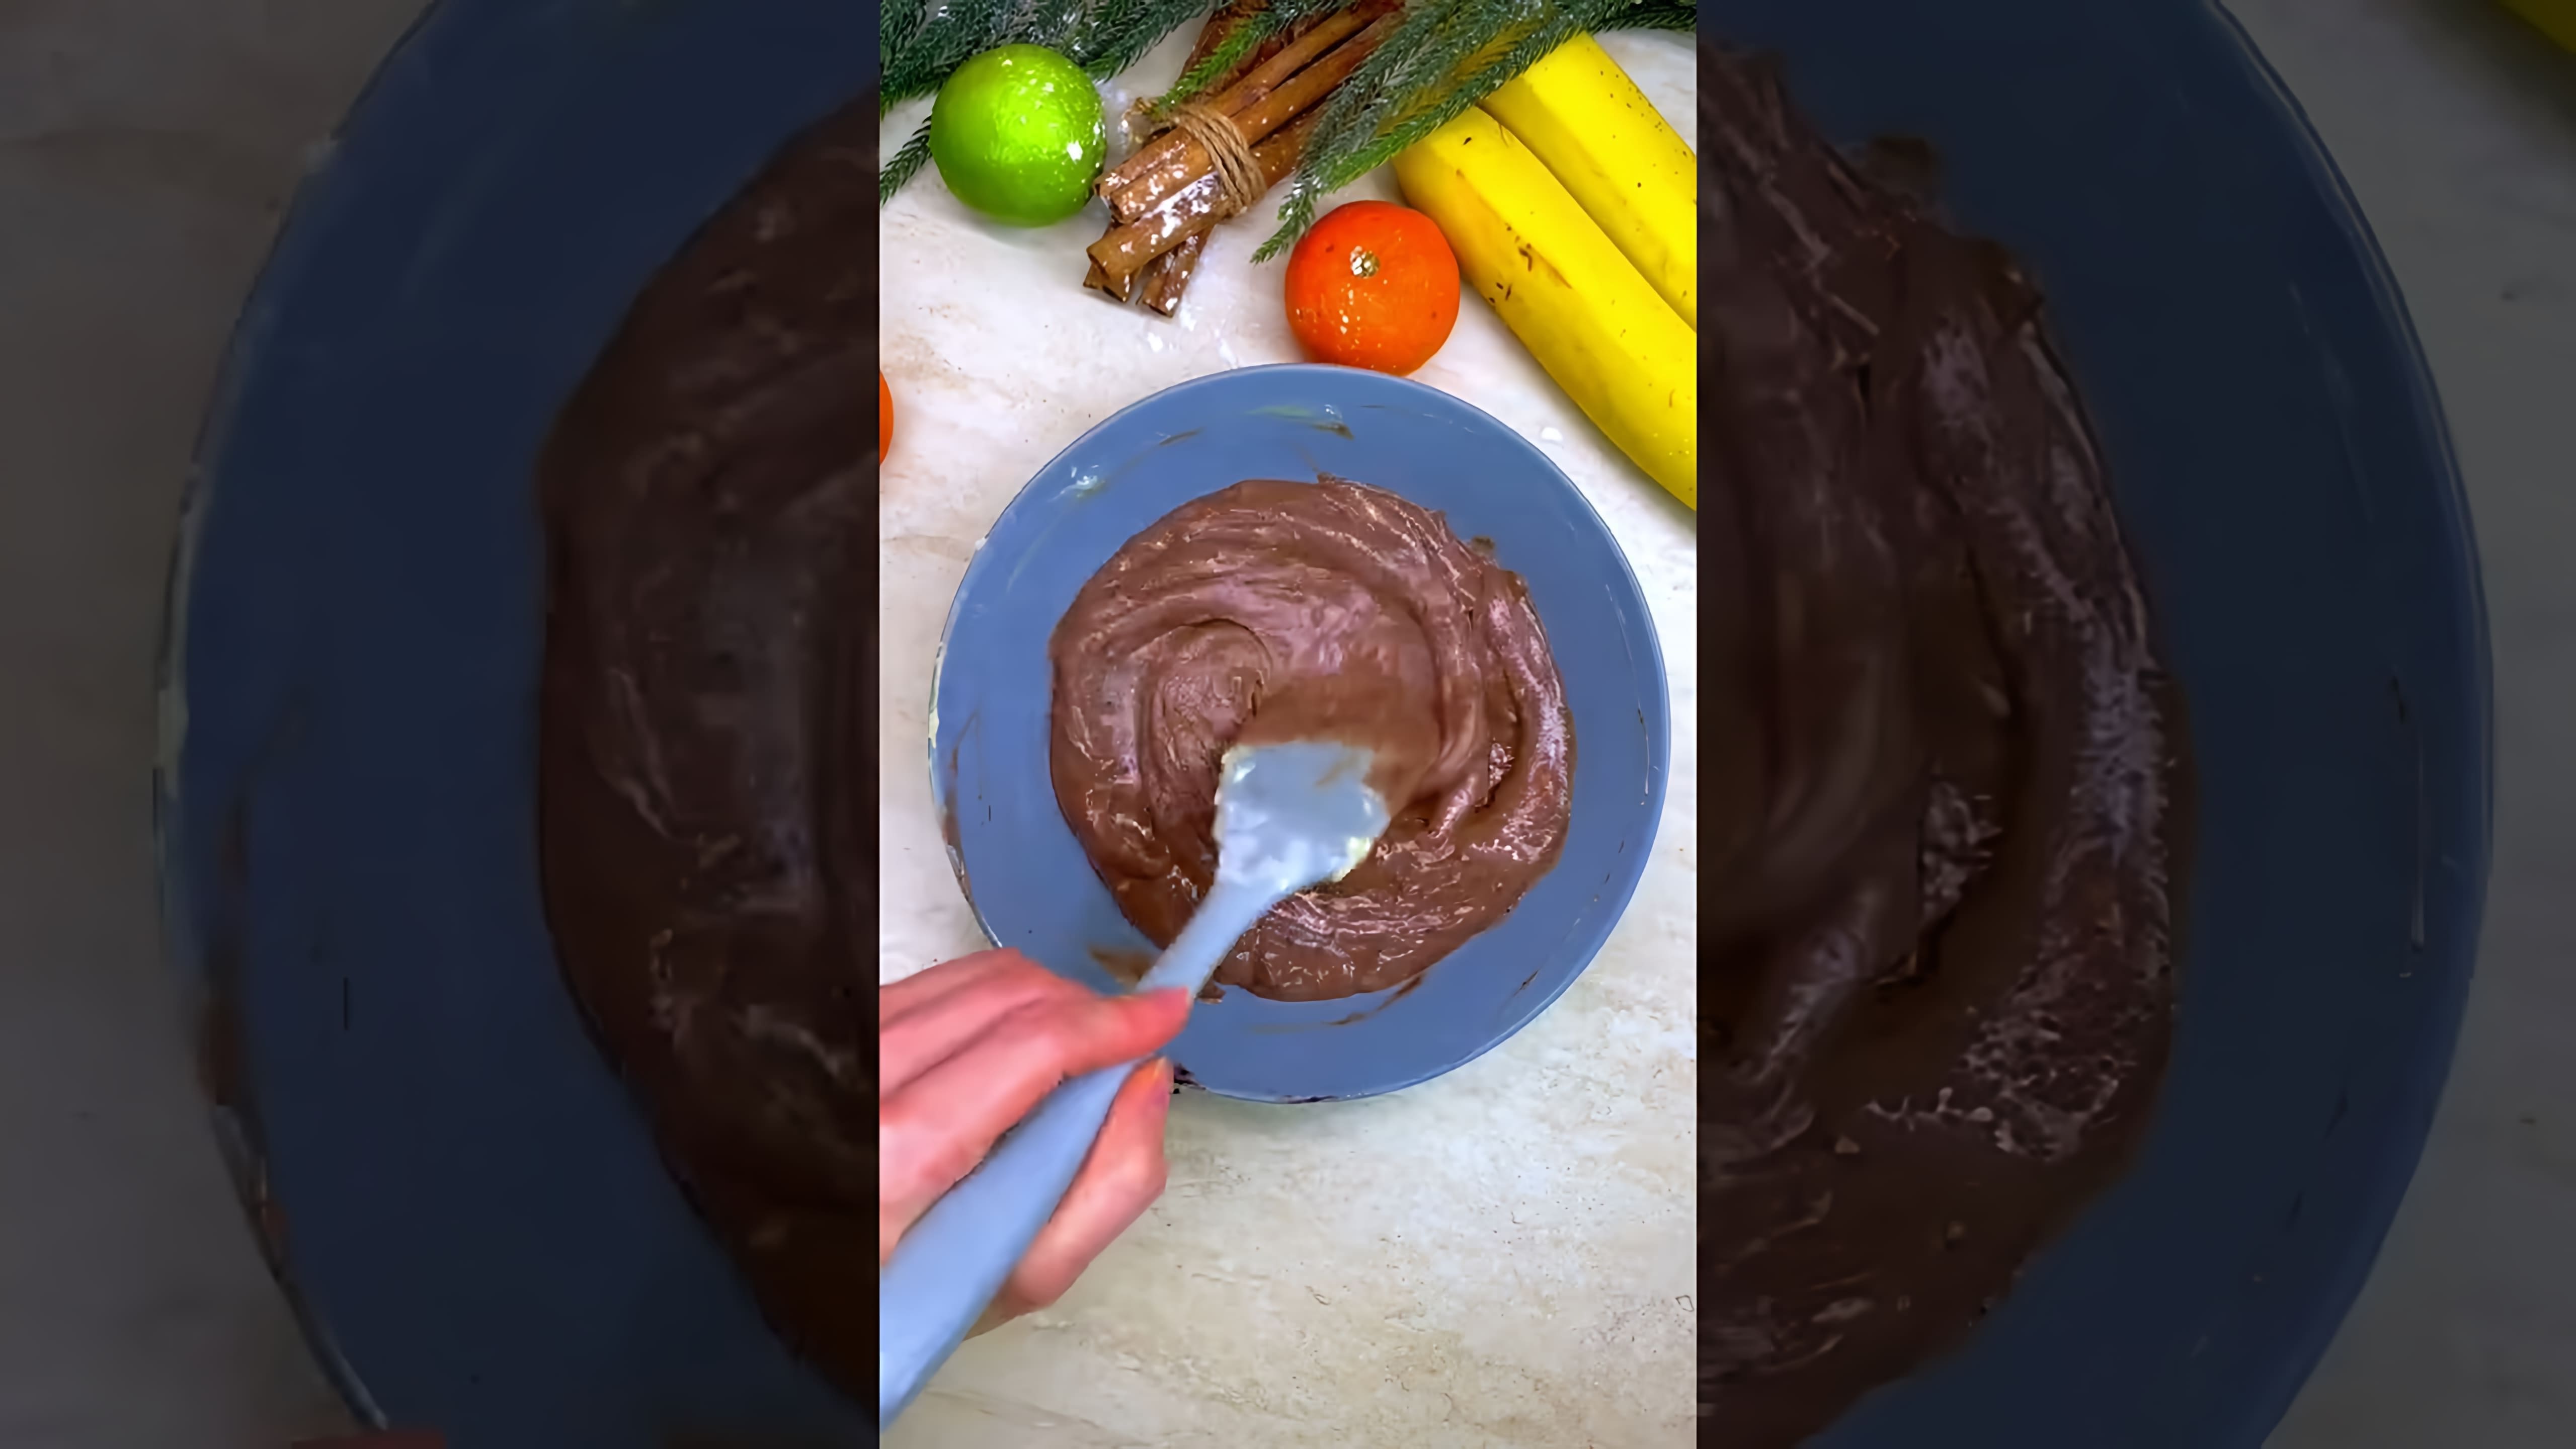 В этом видео демонстрируется процесс приготовления печенья "Шишки"